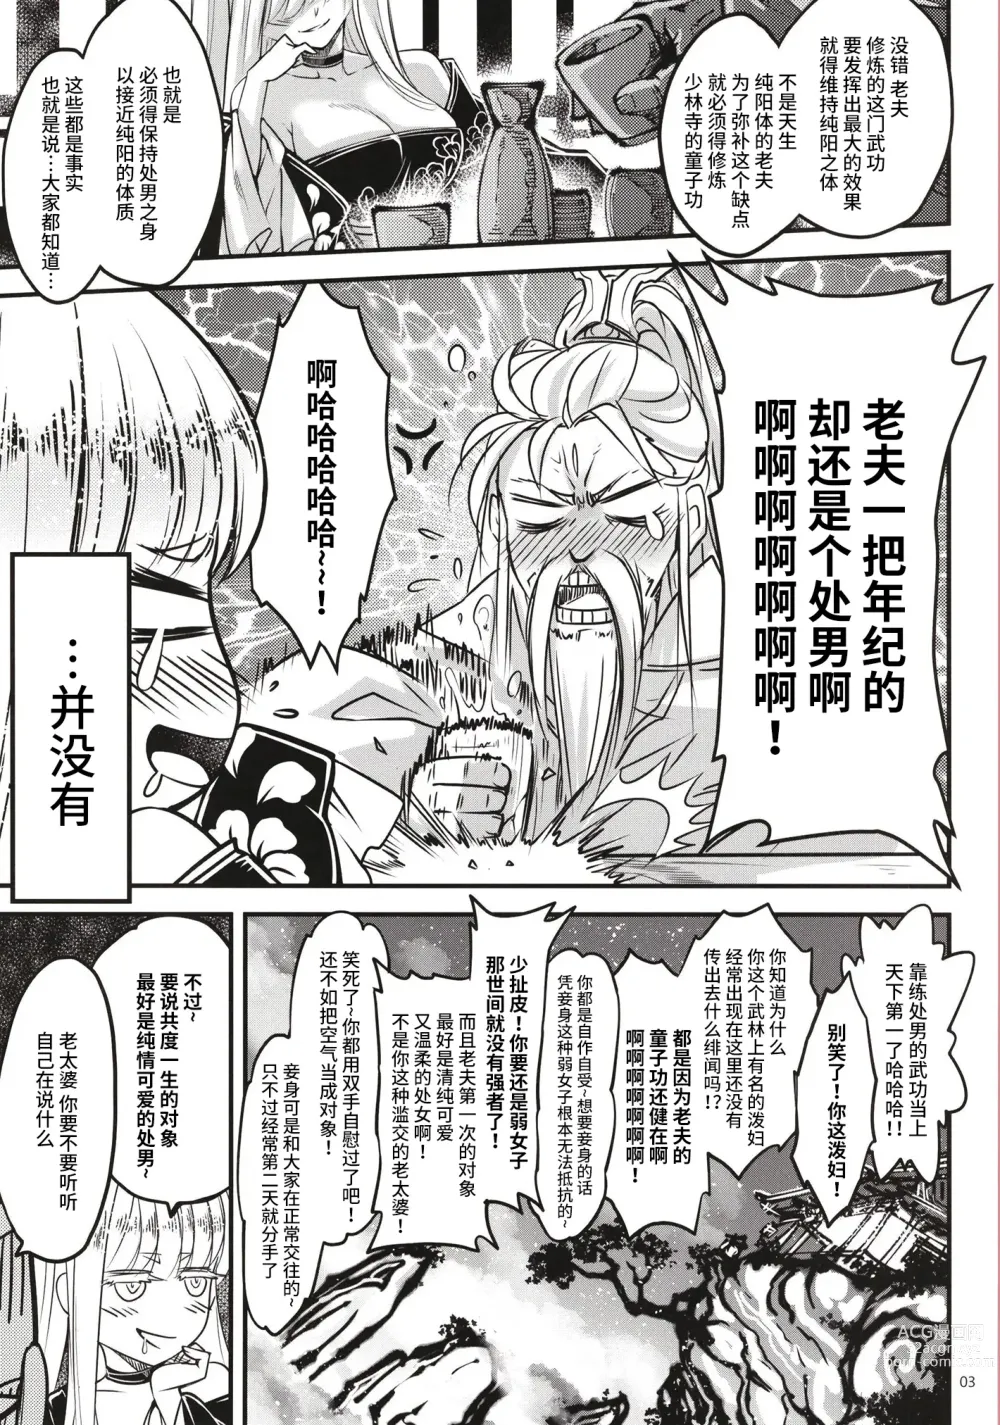 Page 4 of doujinshi Hyakkasou 11 Idatsu Ijitsu Gaiden